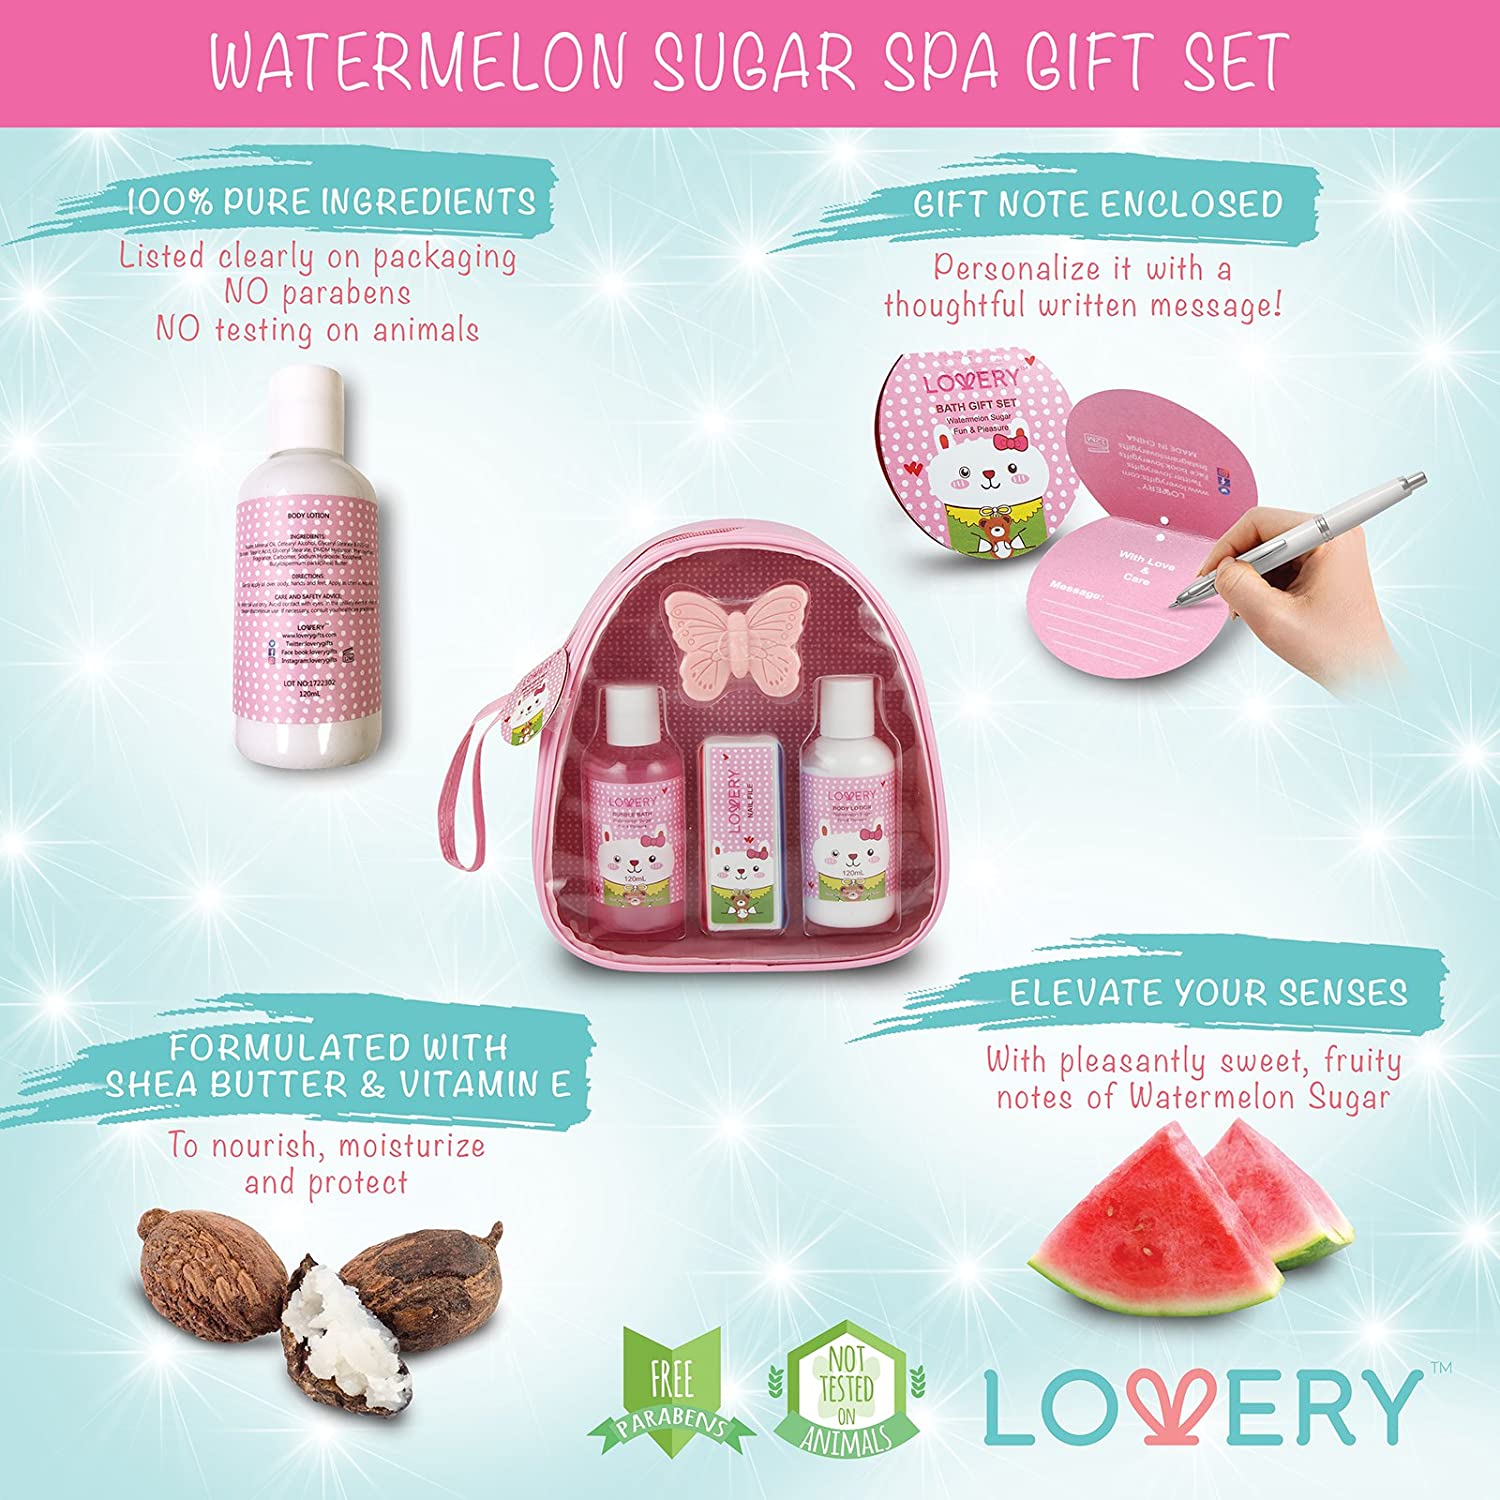 Pink Sugar Red Velvet Perfume Women 2 pcs GIFT SET 1.7 oz EDT Spray + LIP  GLOSS | eBay